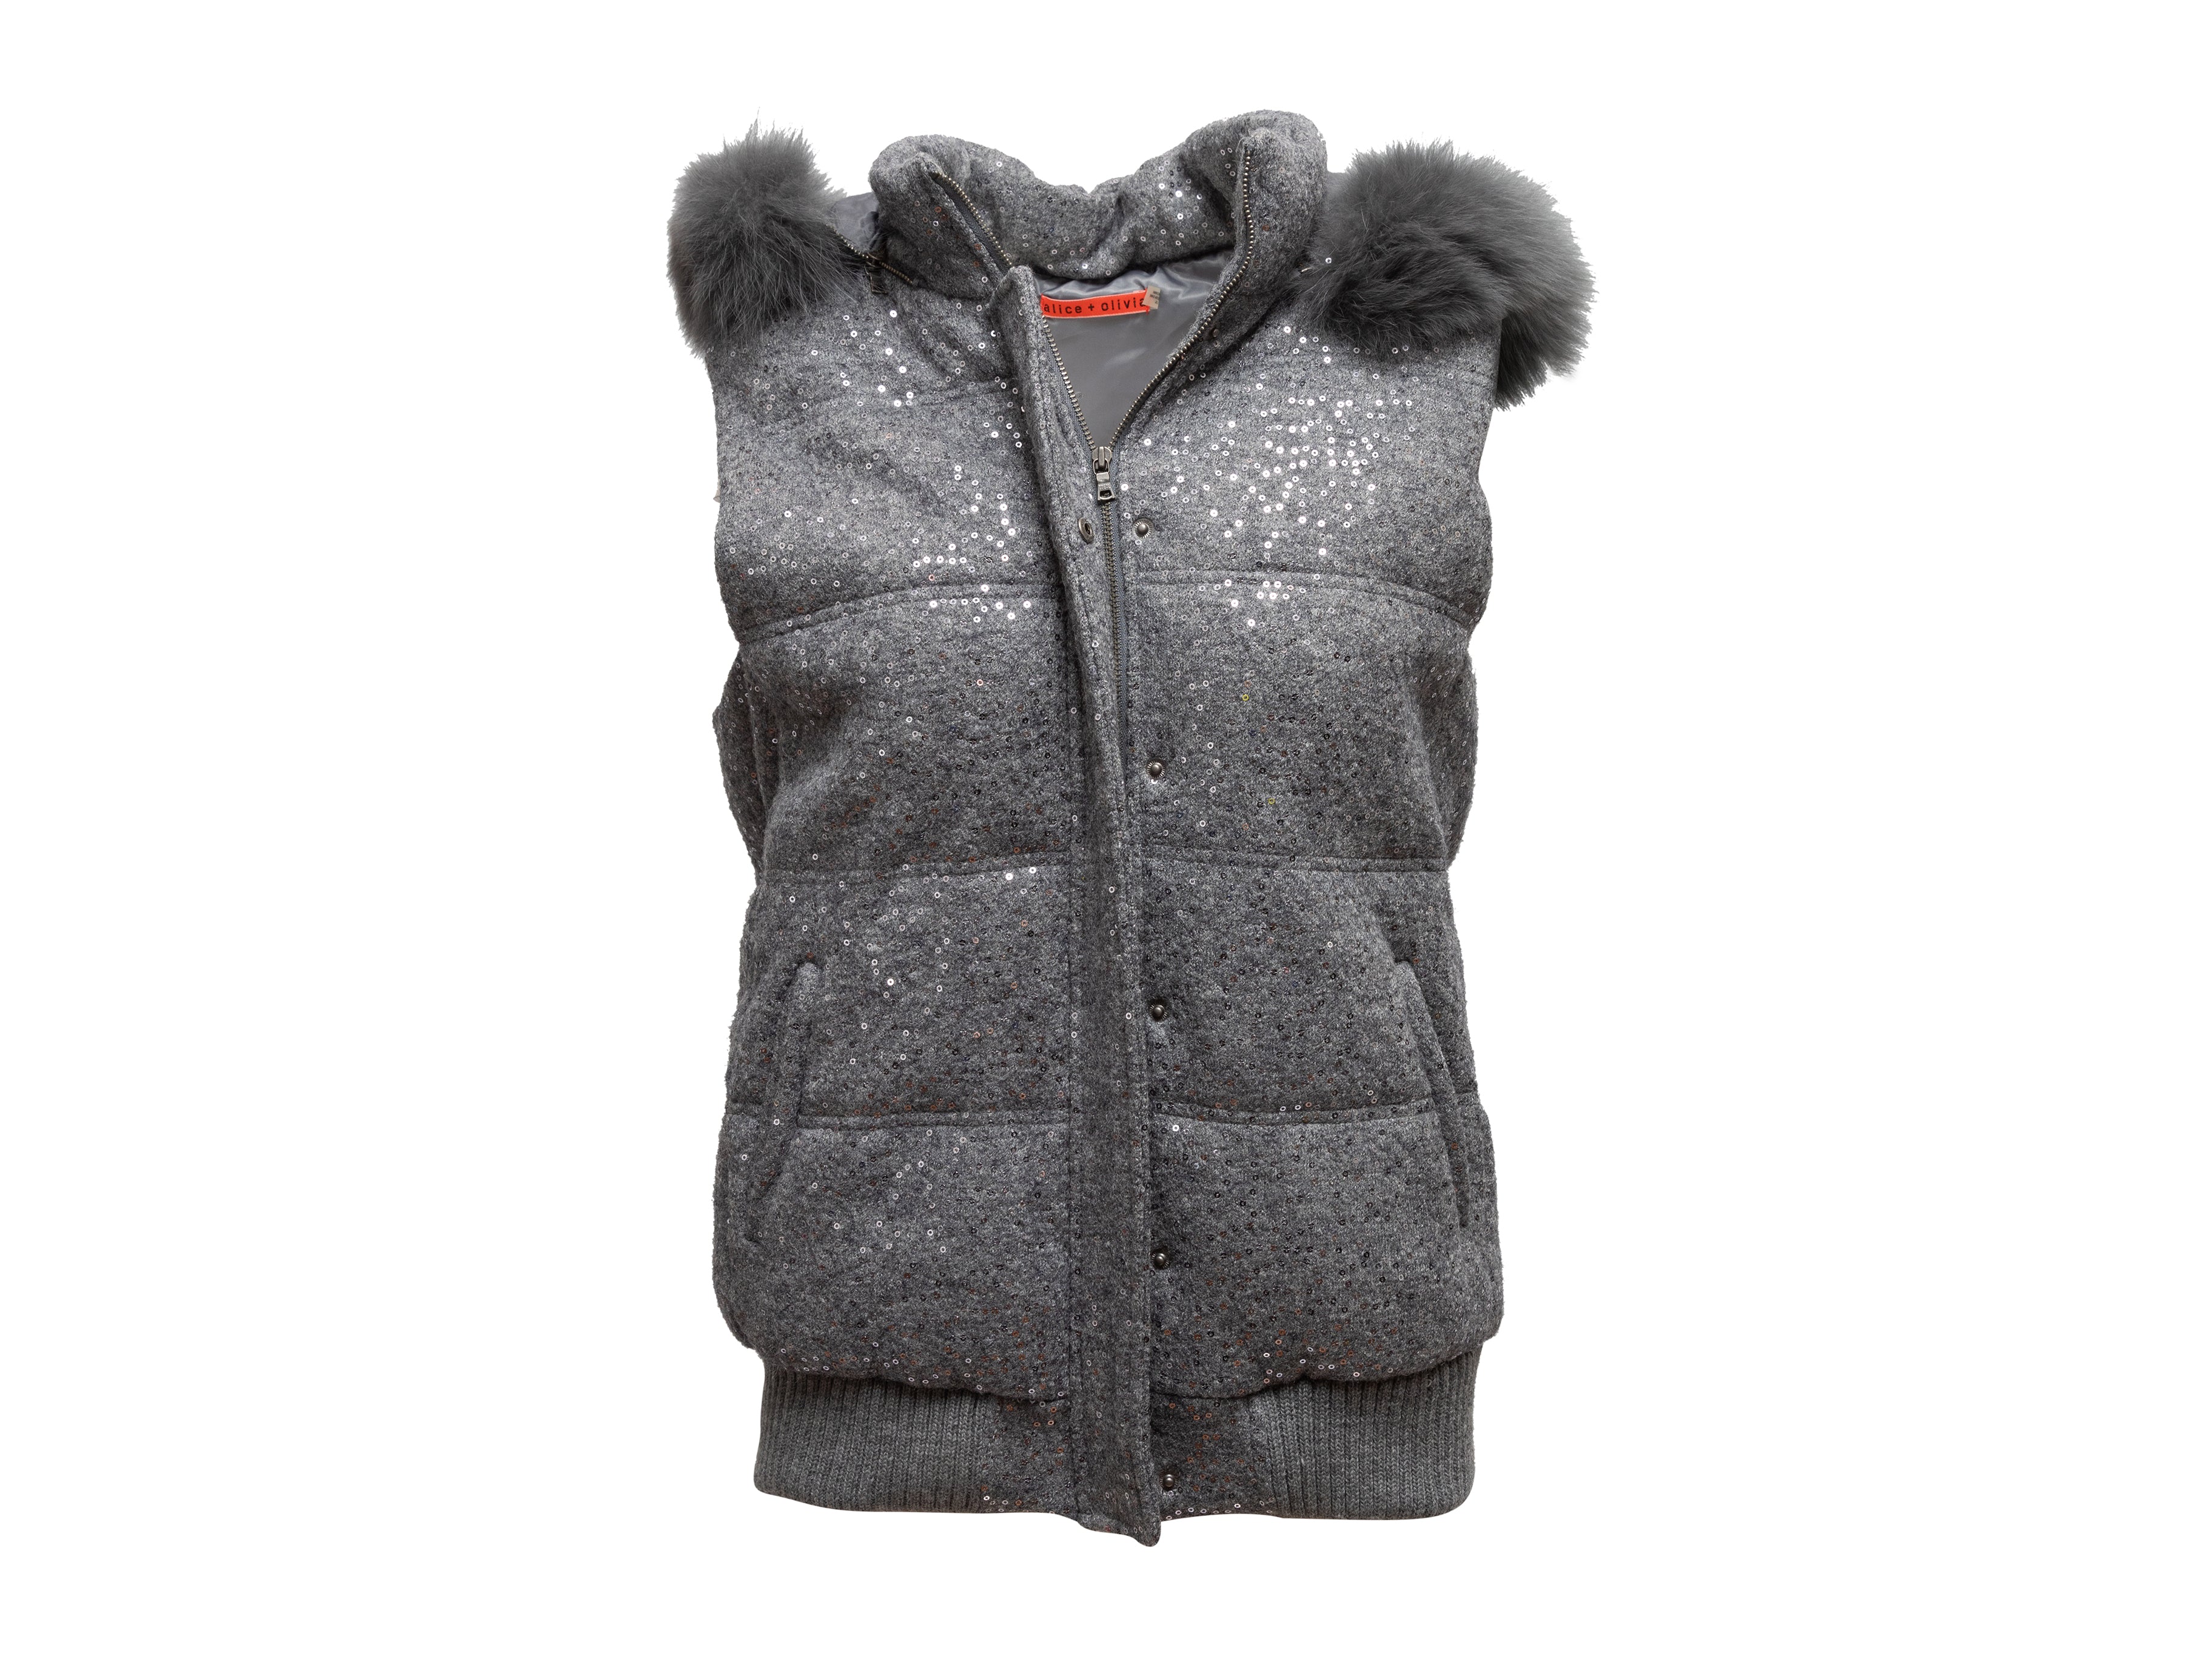 Grey Alice + Olivia Sequined Fox Fur-Trimmed Puffer Vest Size L - Designer Revival